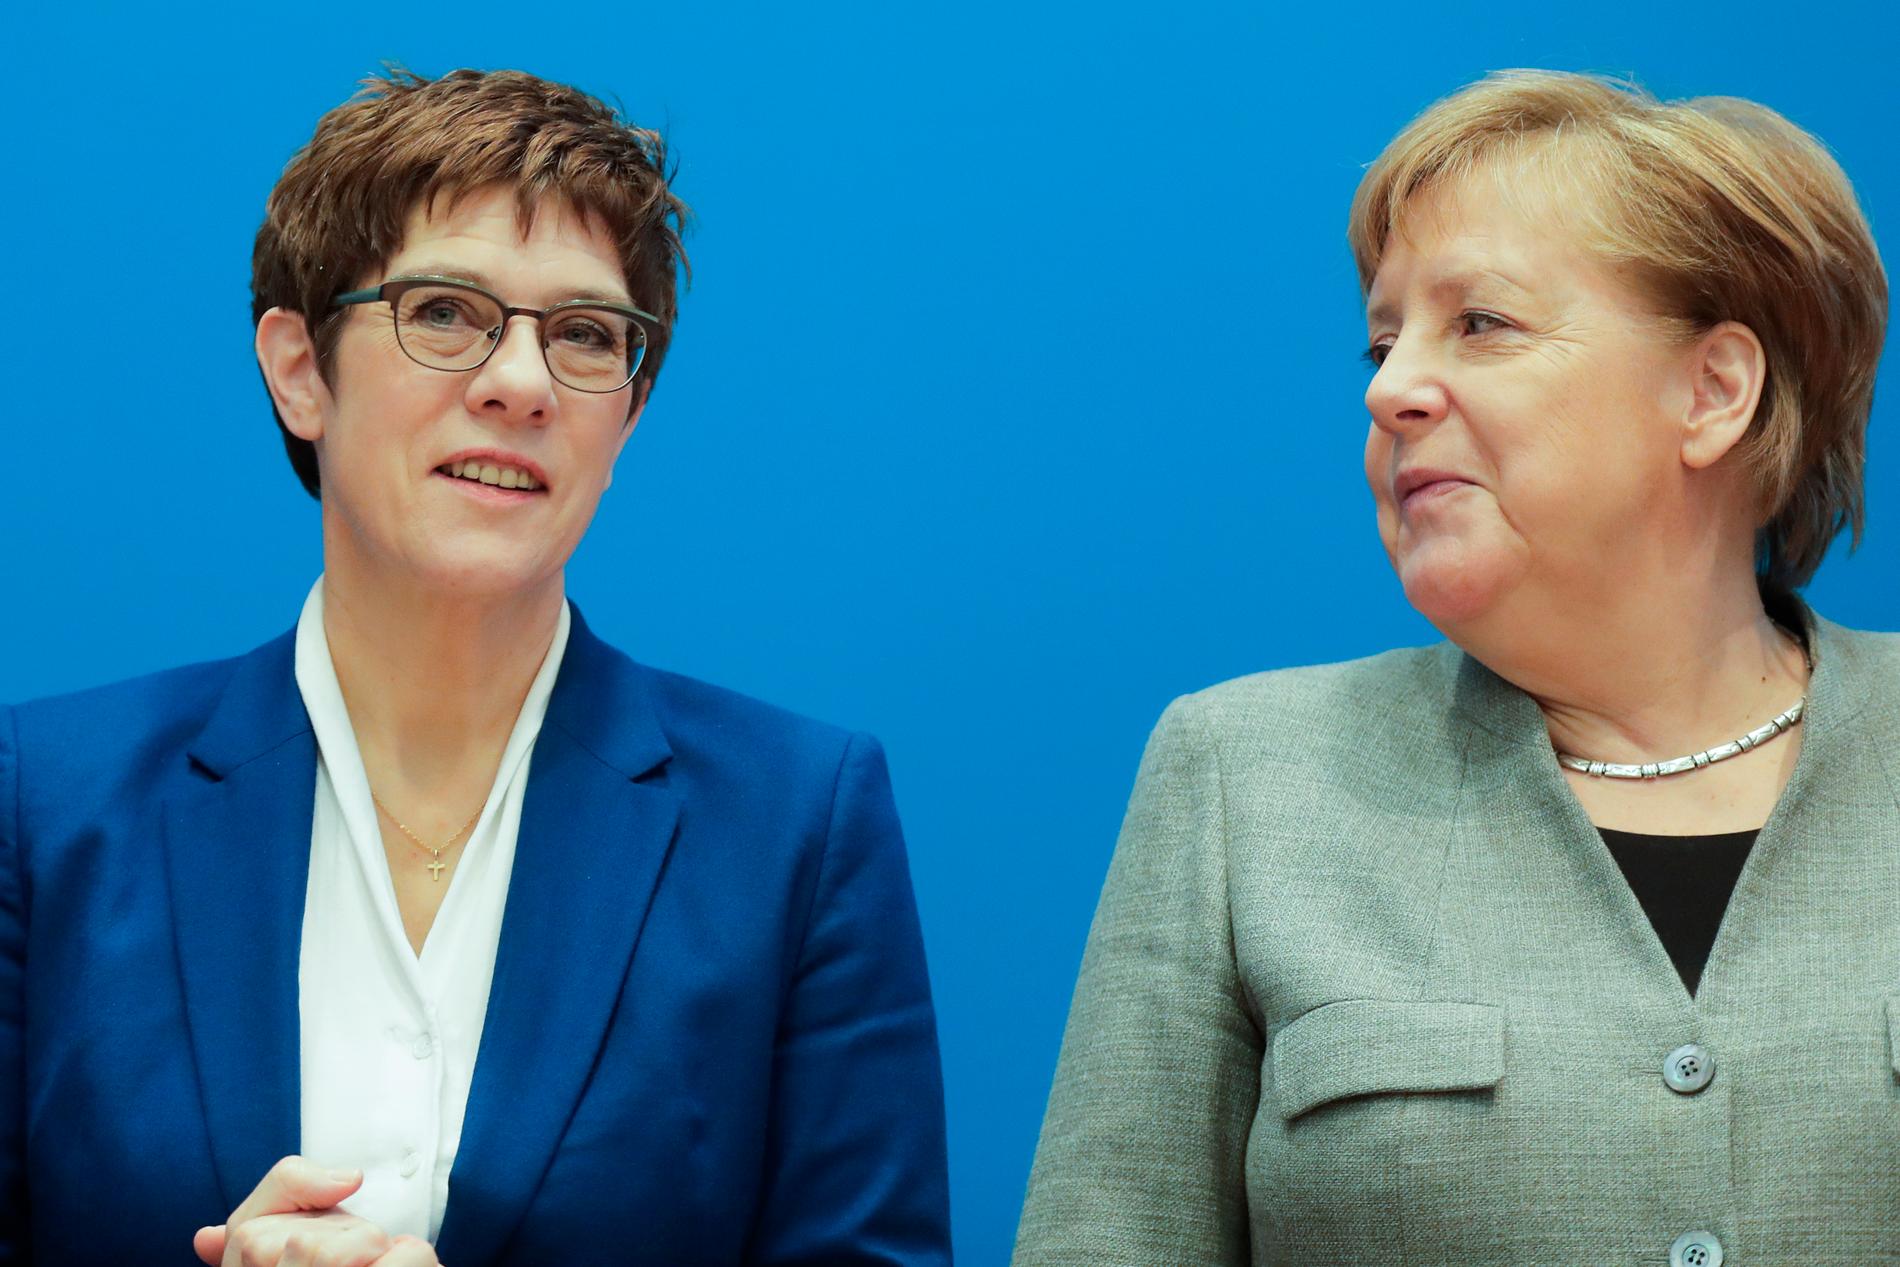 Tysklands förbundskansler Angela Merkel satsade sina kort på efterträdaren Annegret Kramp-Karrenbauer som röstades fram som partiledare för konservativa CDU. Ett år senare slänger hon in handduken. CDU, regeringen och Tyskland kastas in i en slags regeringskris.